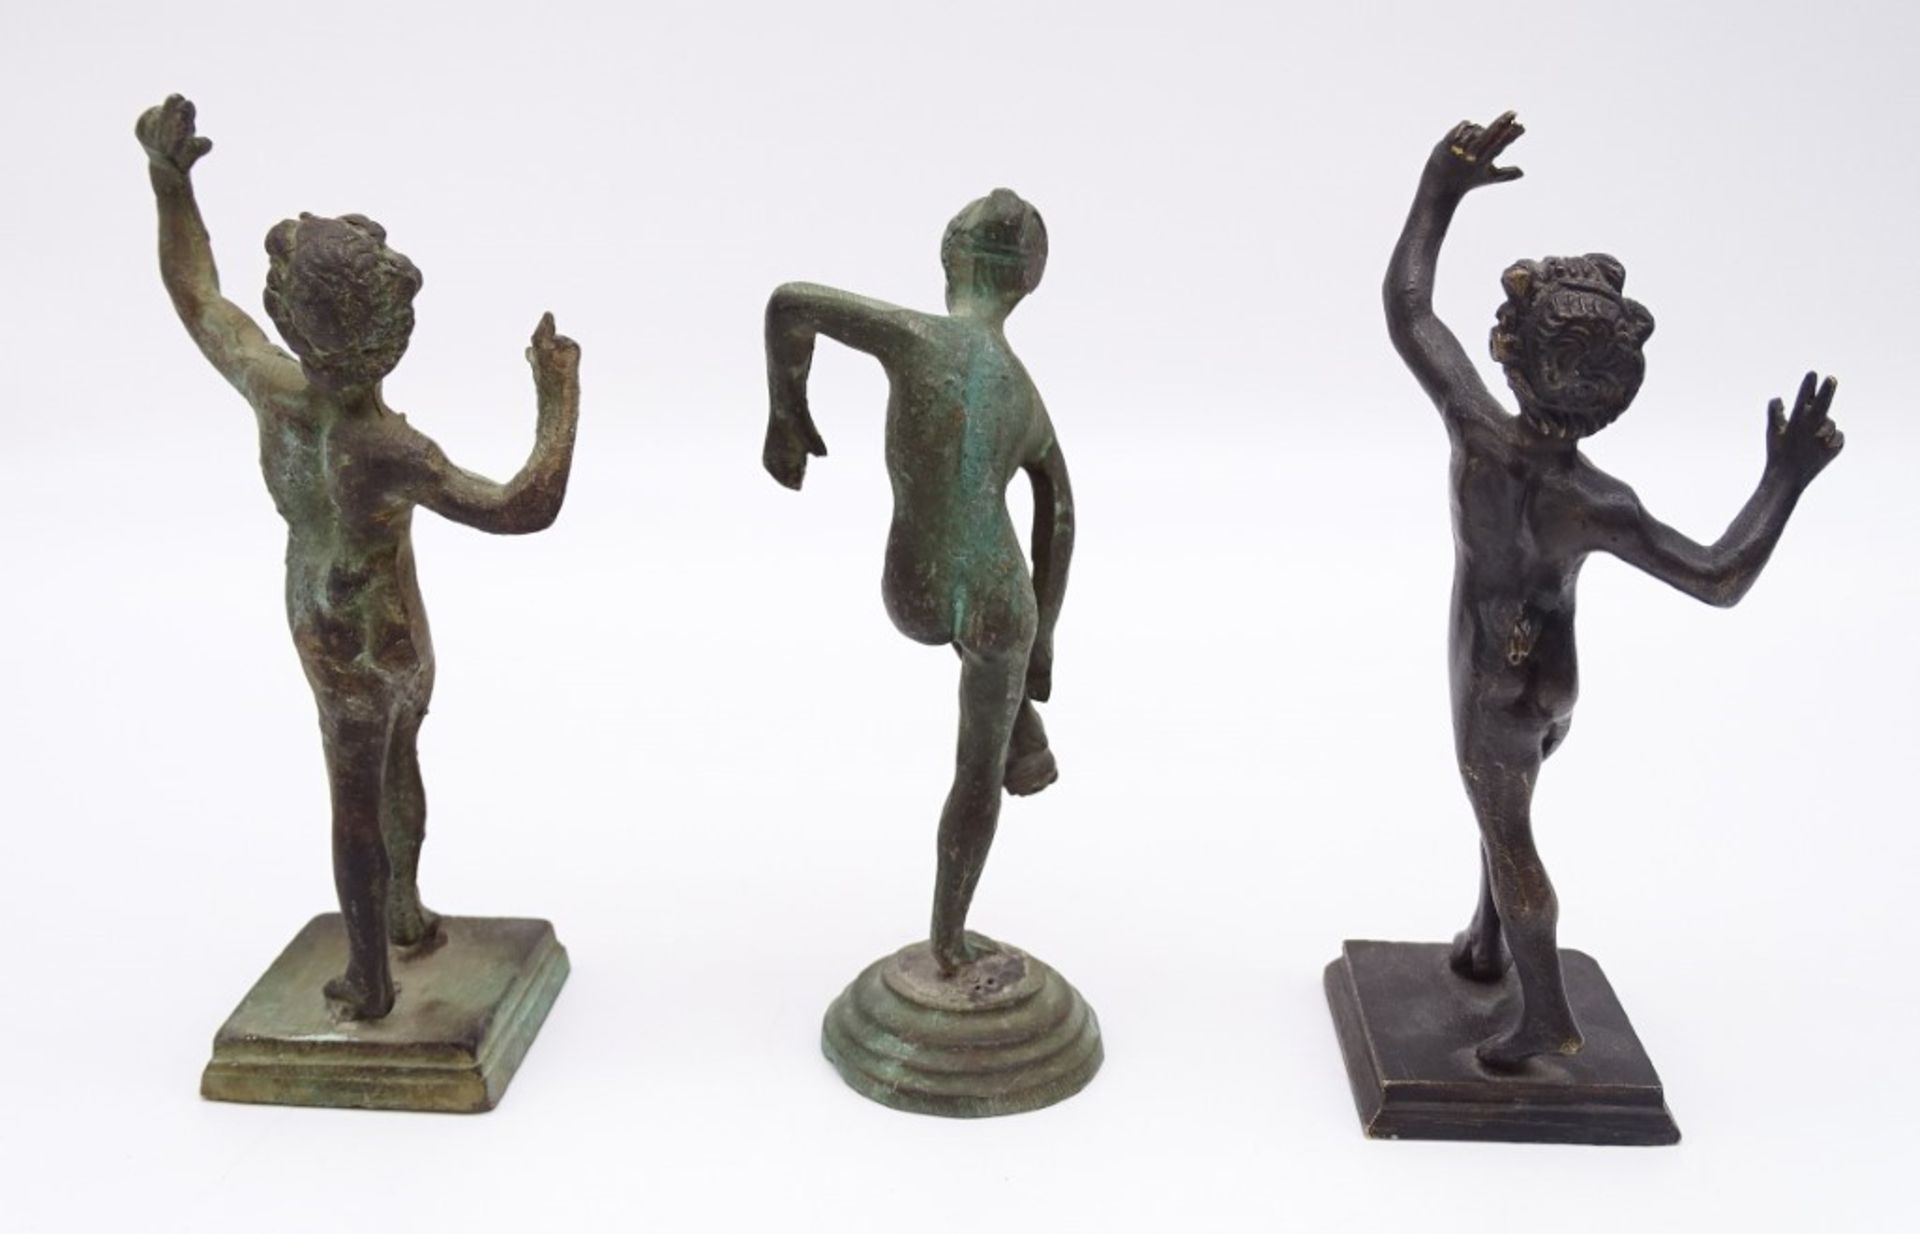 2 x Kopien des Tanzenden Fauns, Casa del Fauno, Pompeij, 1 x Kopie der Venus im Bad, Slg. Barsanti, - Bild 5 aus 8